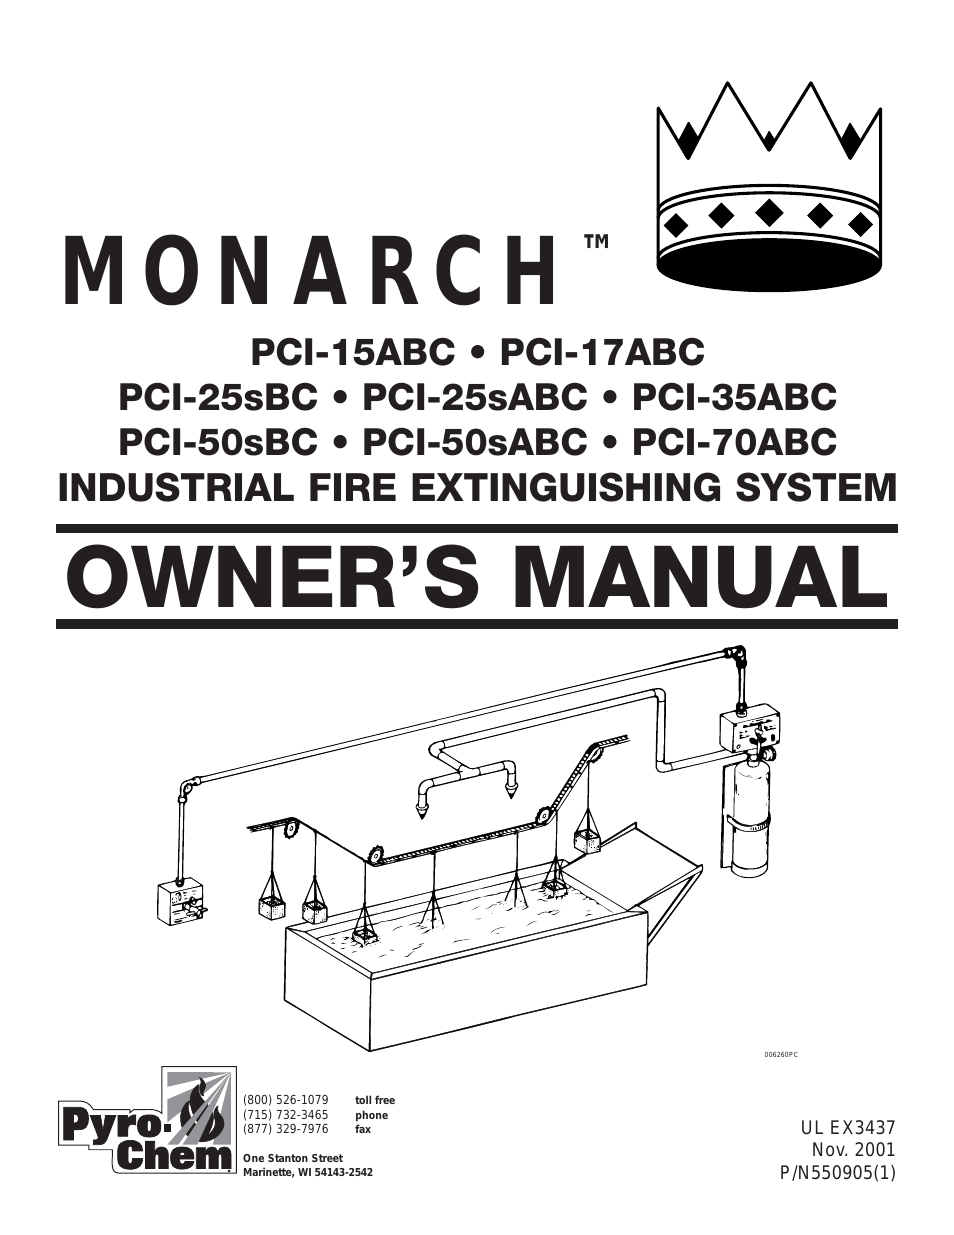 MONARCH Industrial